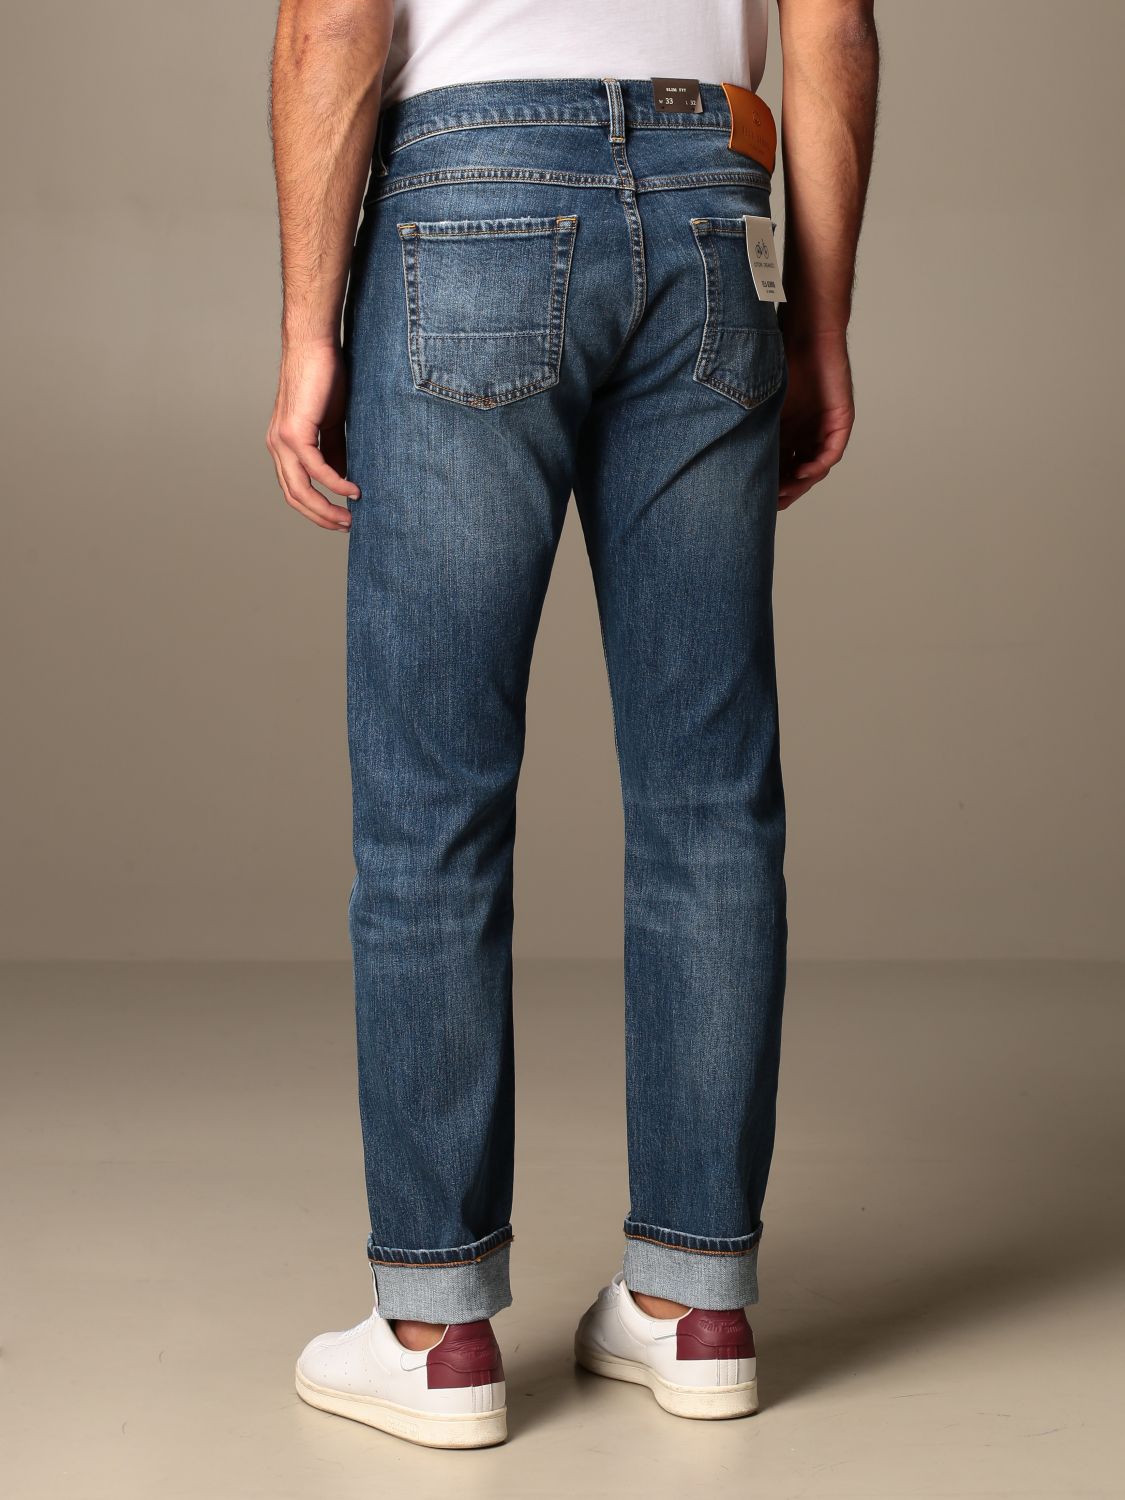 Tela Genova Outlet: Augusto jeans in slim stretch used denim - Denim ...